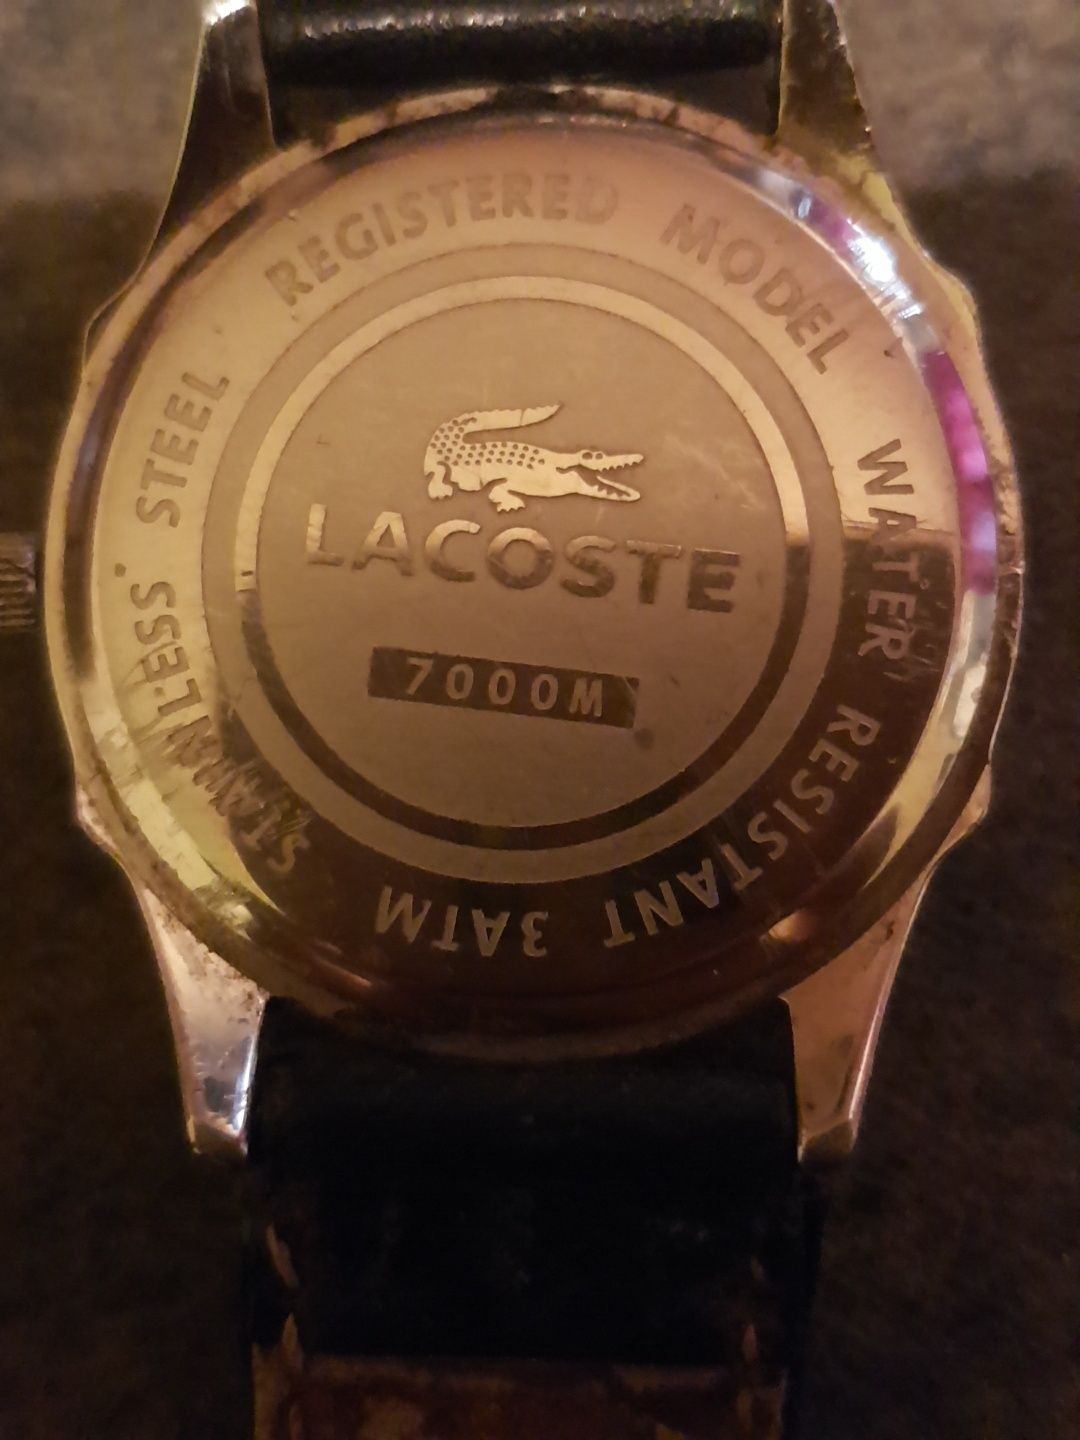 Superb ceas barbati Lacoste 7000M